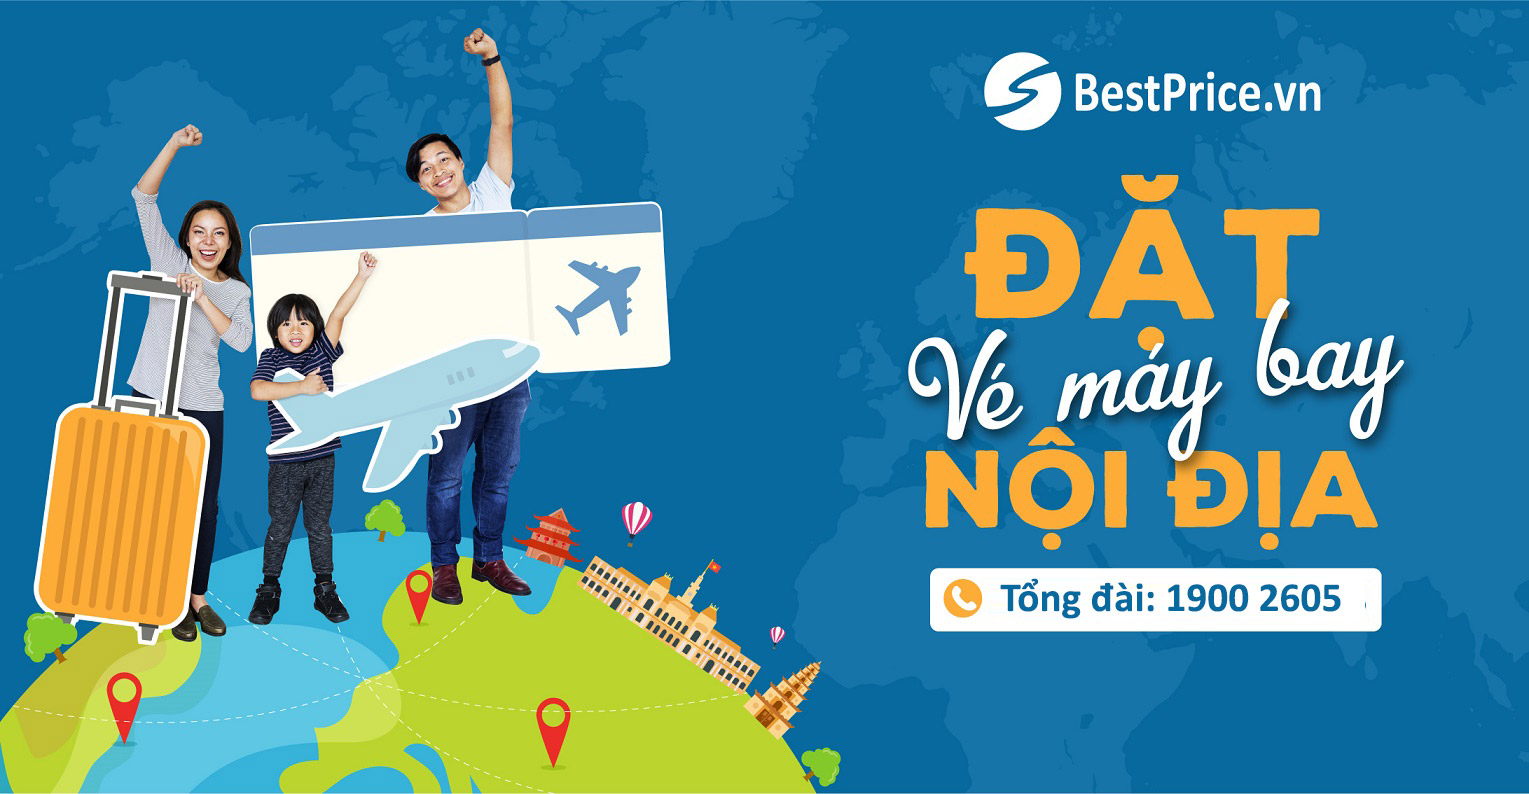 Đặt vé máy bay nội địa giá rẻ nhất tại BestPrice.vn